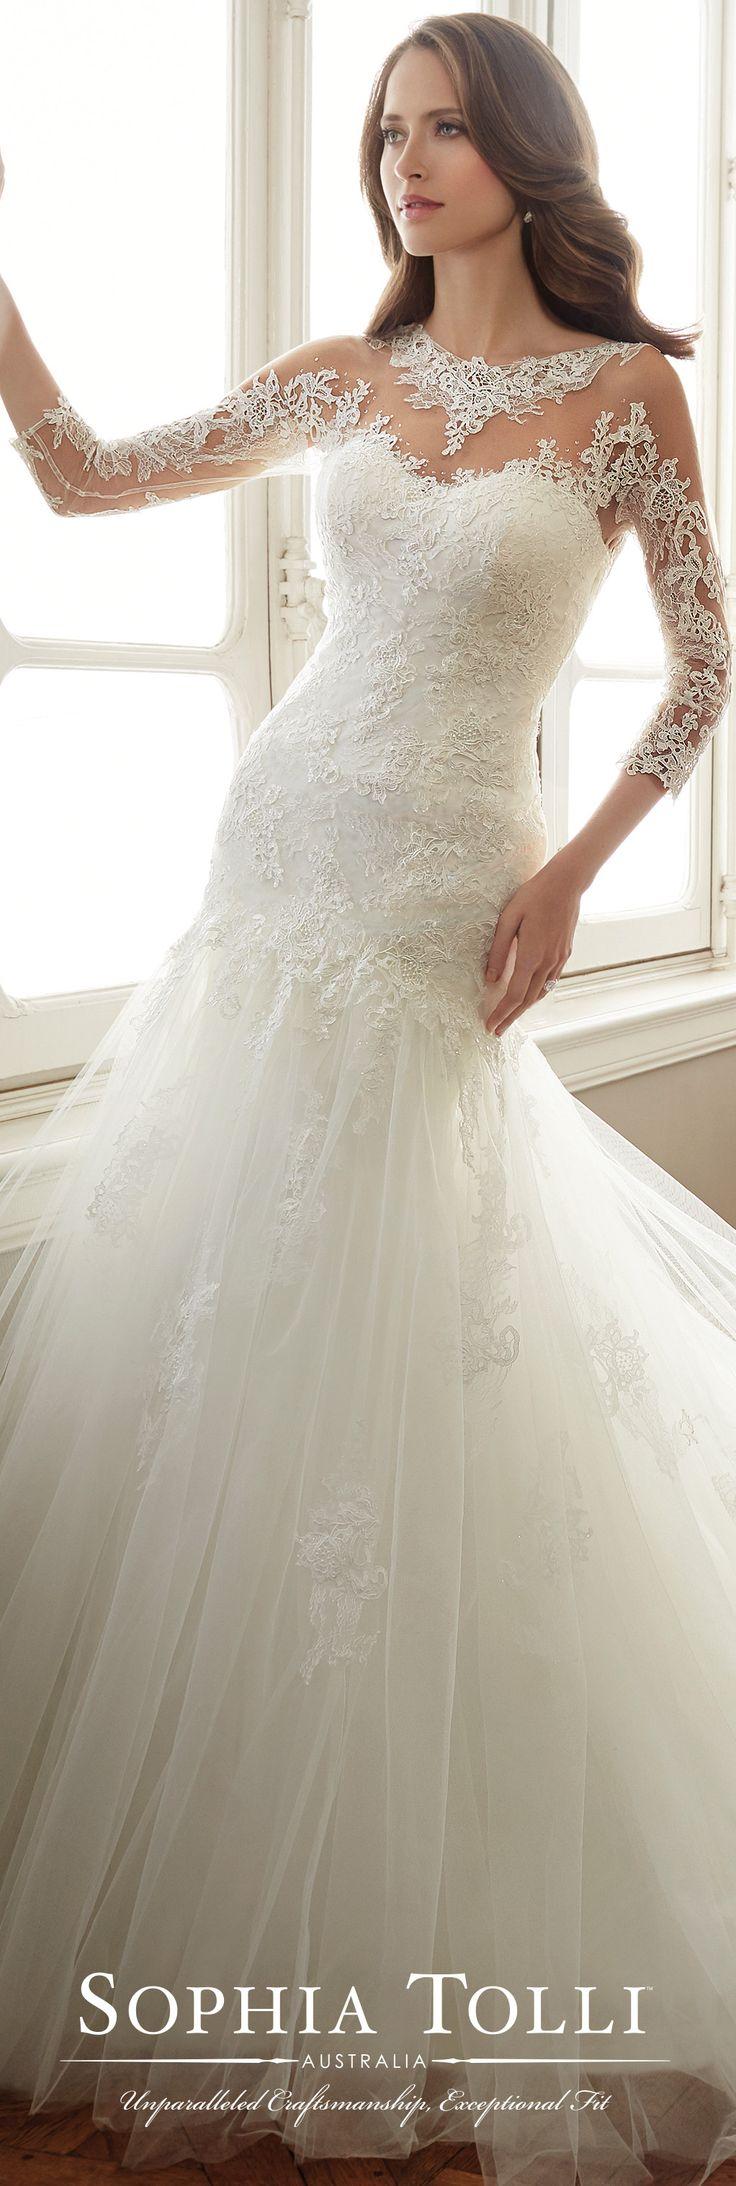 زفاف - Sophia Tolli Wedding Dress Collection